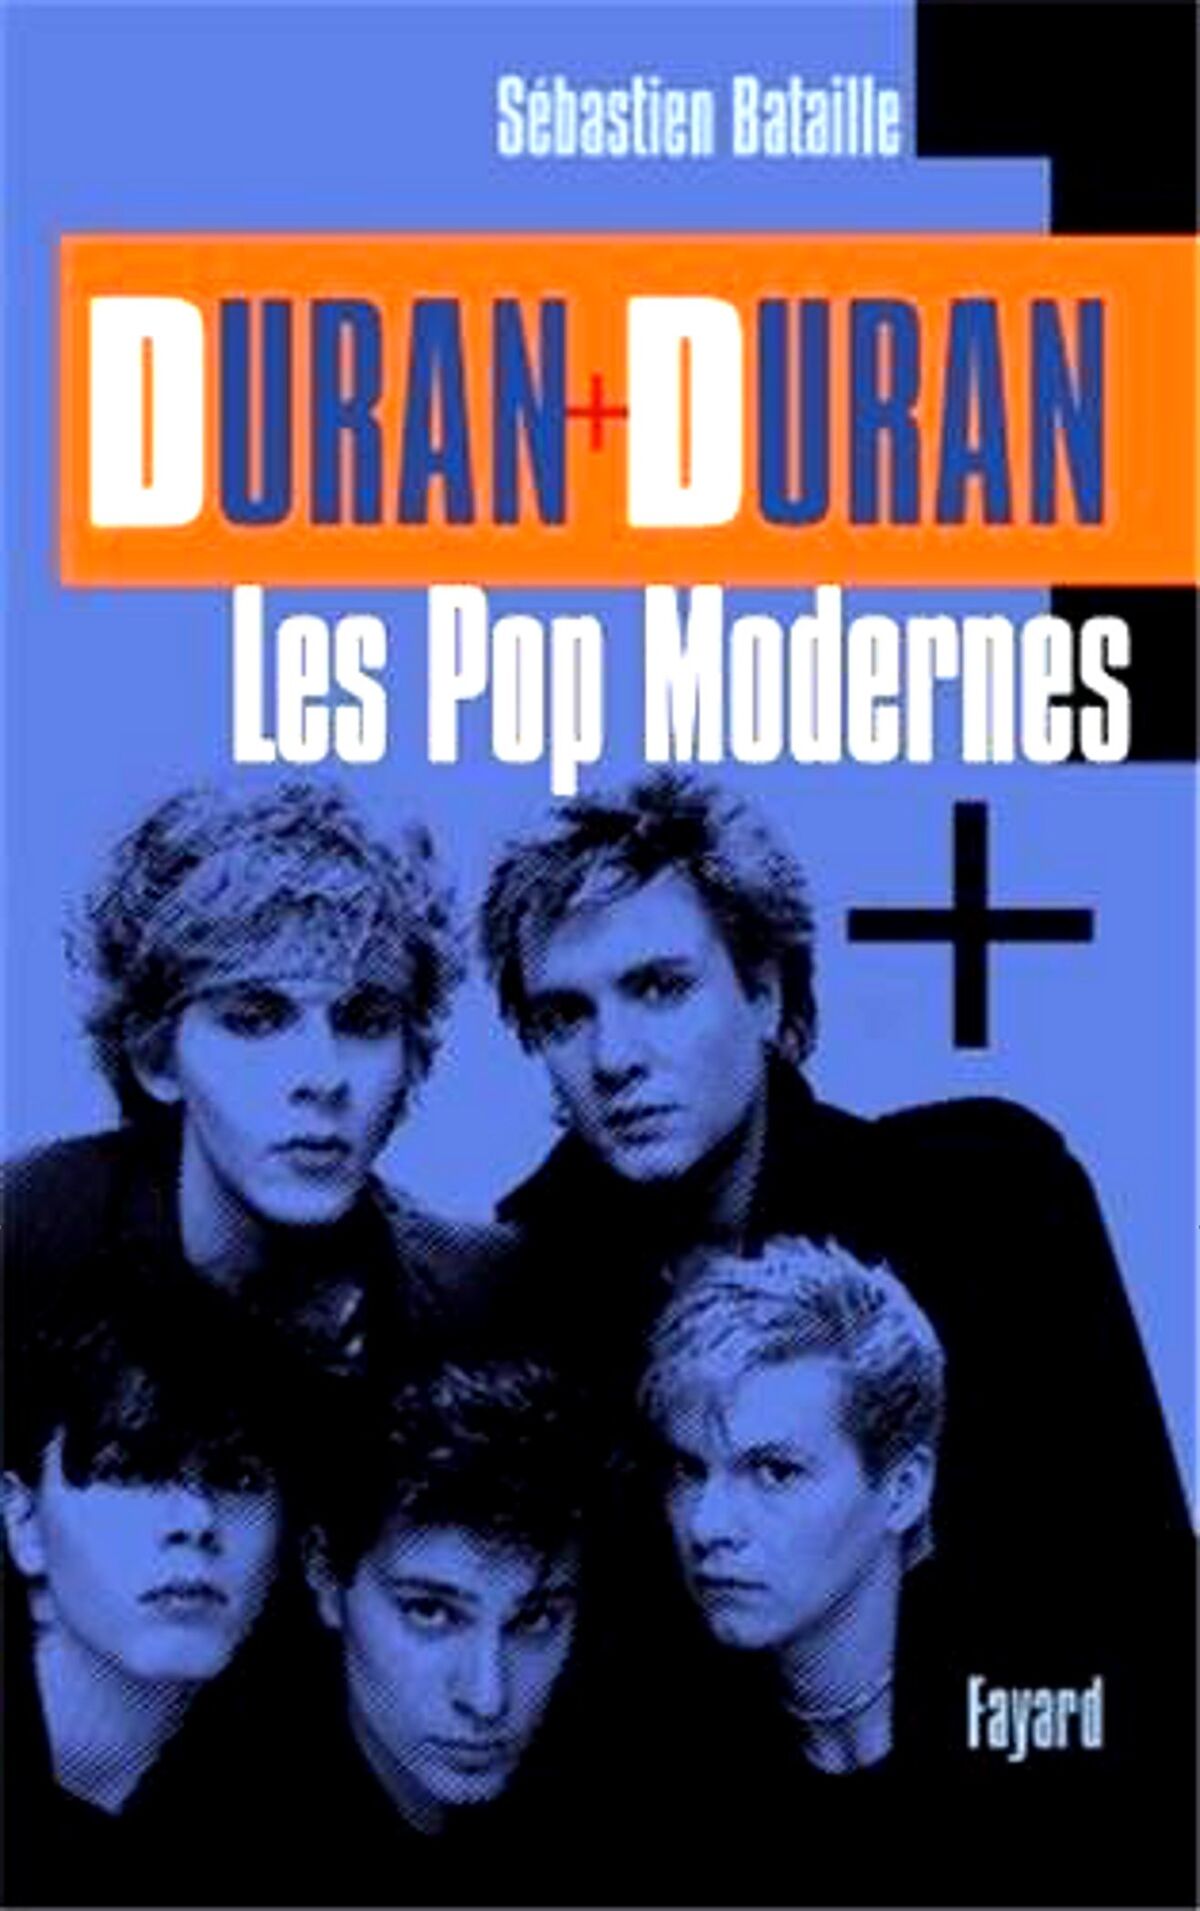 Duran Duran: Les Pop Modernes, Duran Duran Wiki